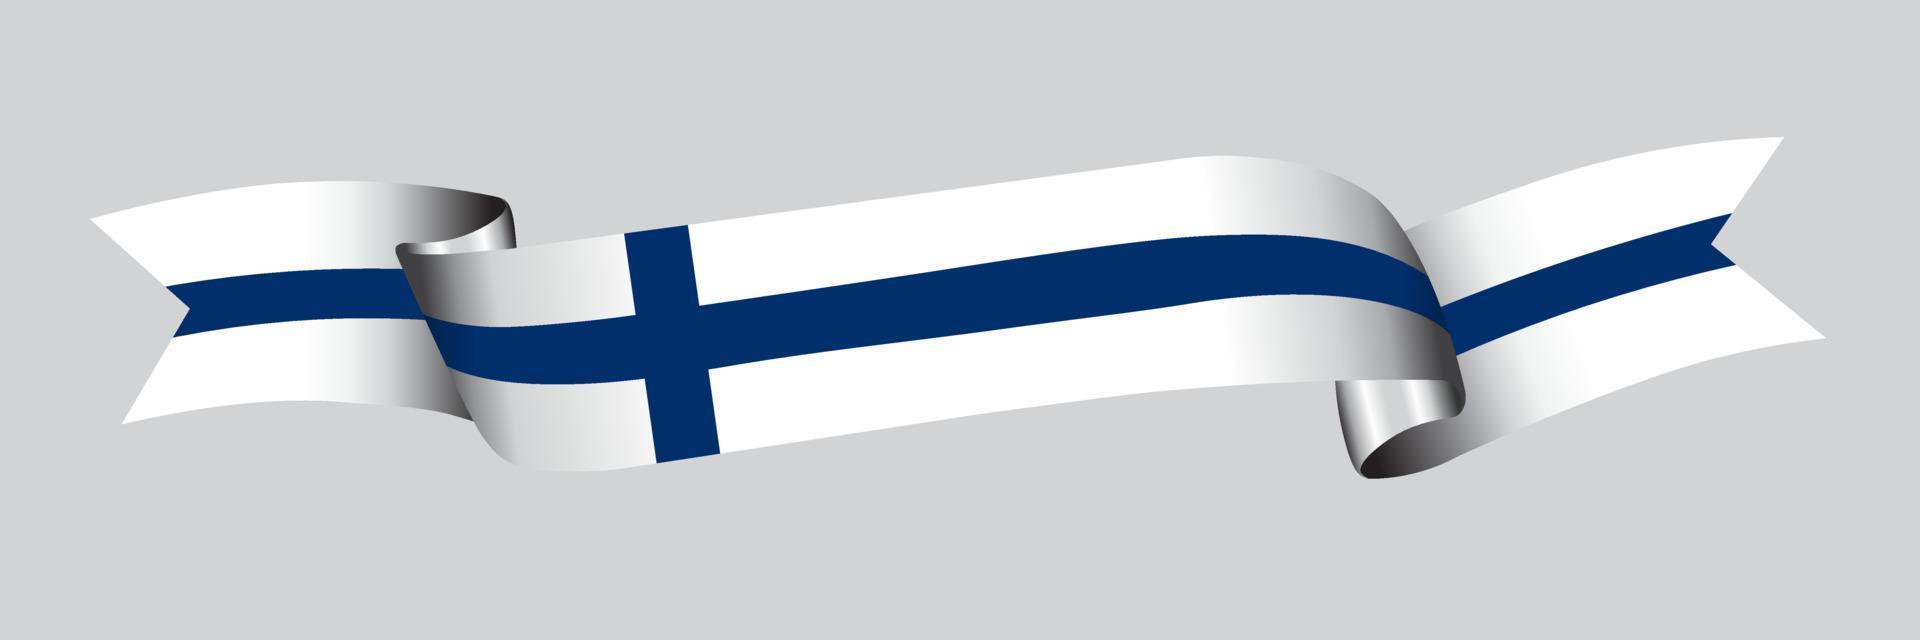 Bandeira 3D da Finlândia na faixa de opções. vetor